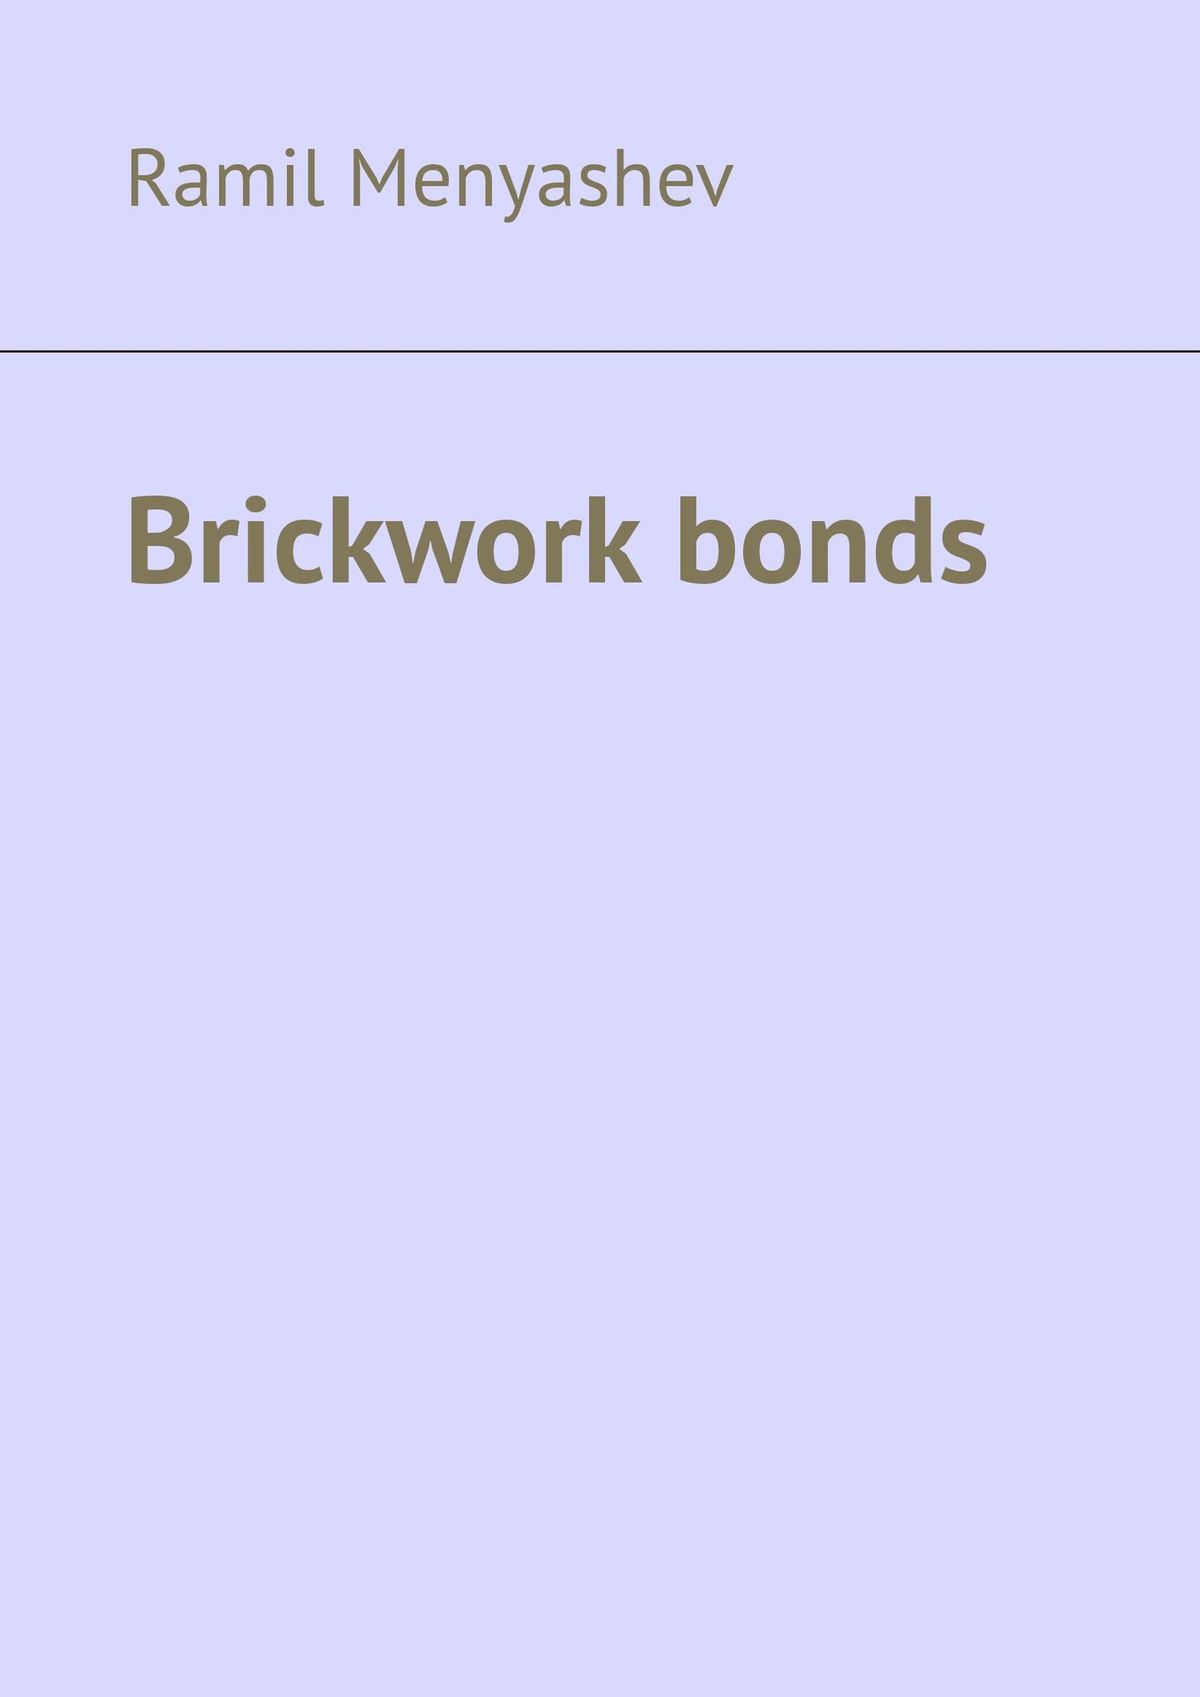 Книга Brickwork bonds из серии , созданная Ramil Menyashev, может относится к жанру Руководства. Стоимость книги Brickwork bonds  с идентификатором 28721189 составляет 400.00 руб.